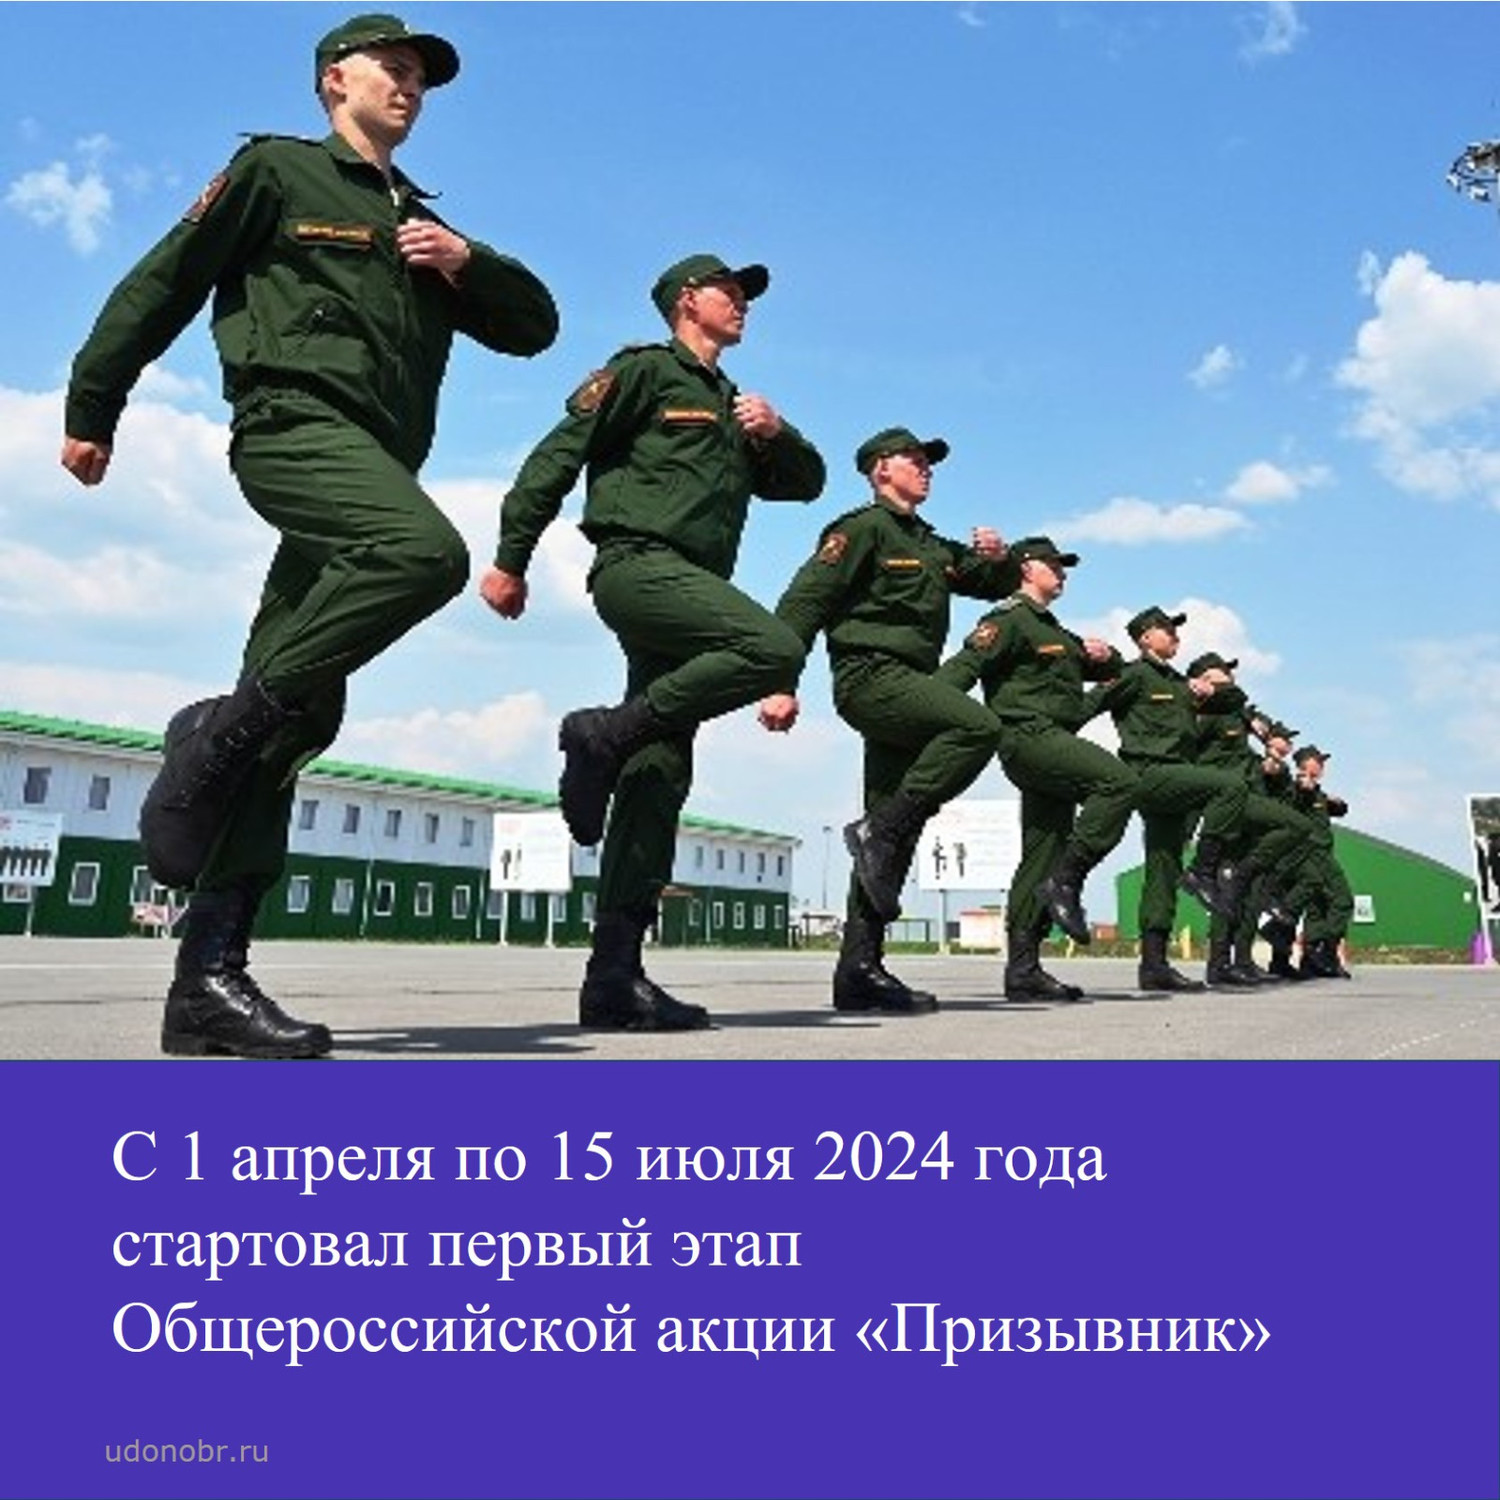 С 1 апреля по 15 июля 2024 стартовал первый этап Общероссийской акции «Призывник»